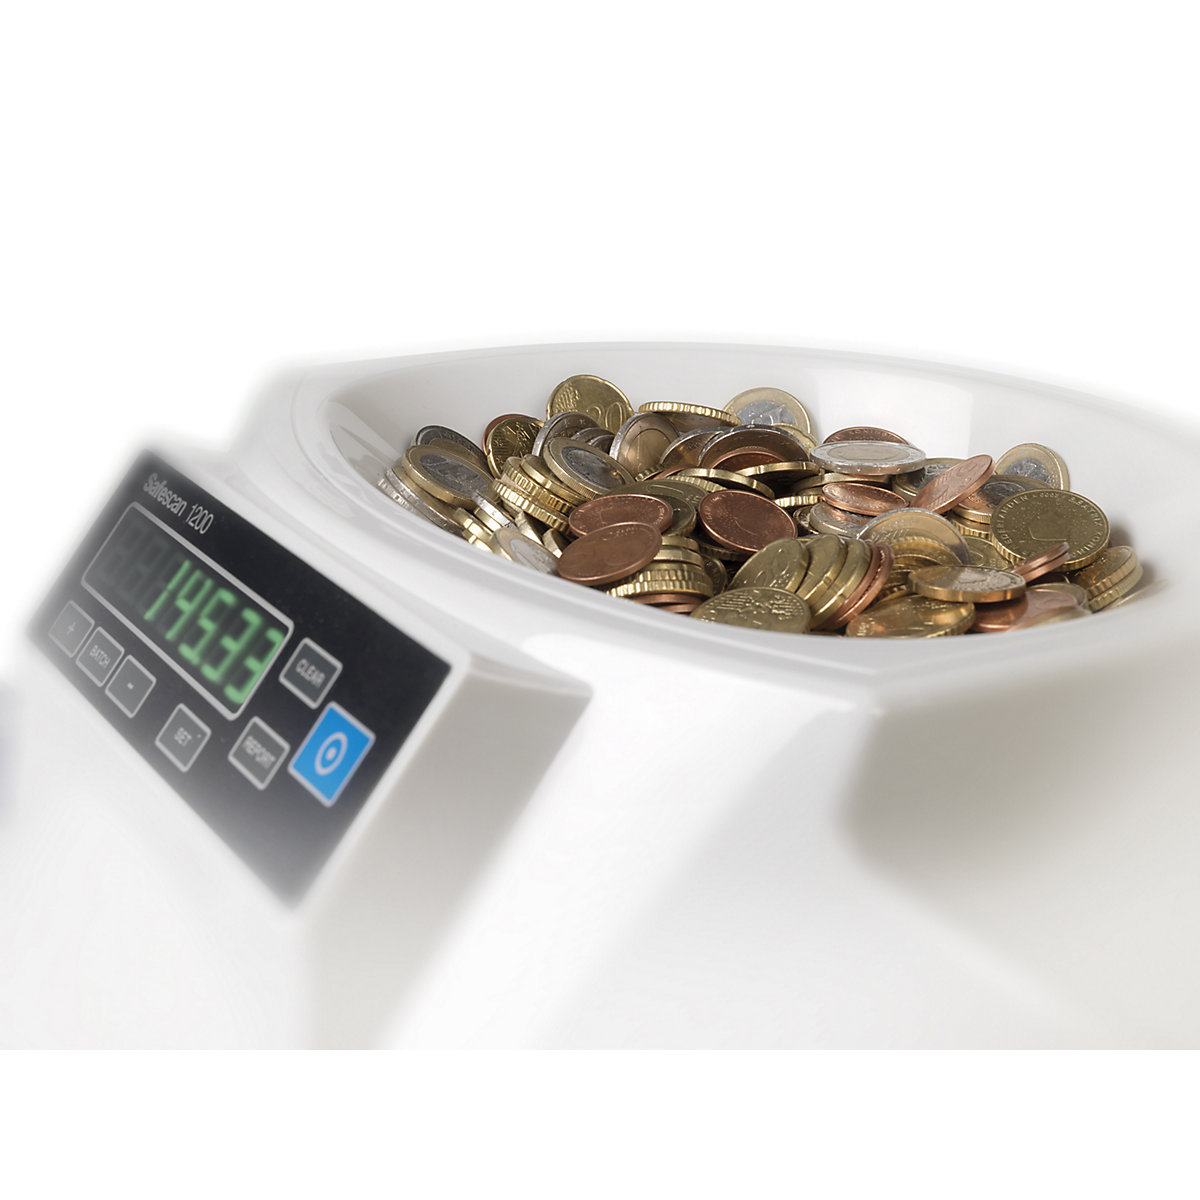 Naprava za štetje in razvrščanje kovancev – Safescan (Slika izdelka 8)-7